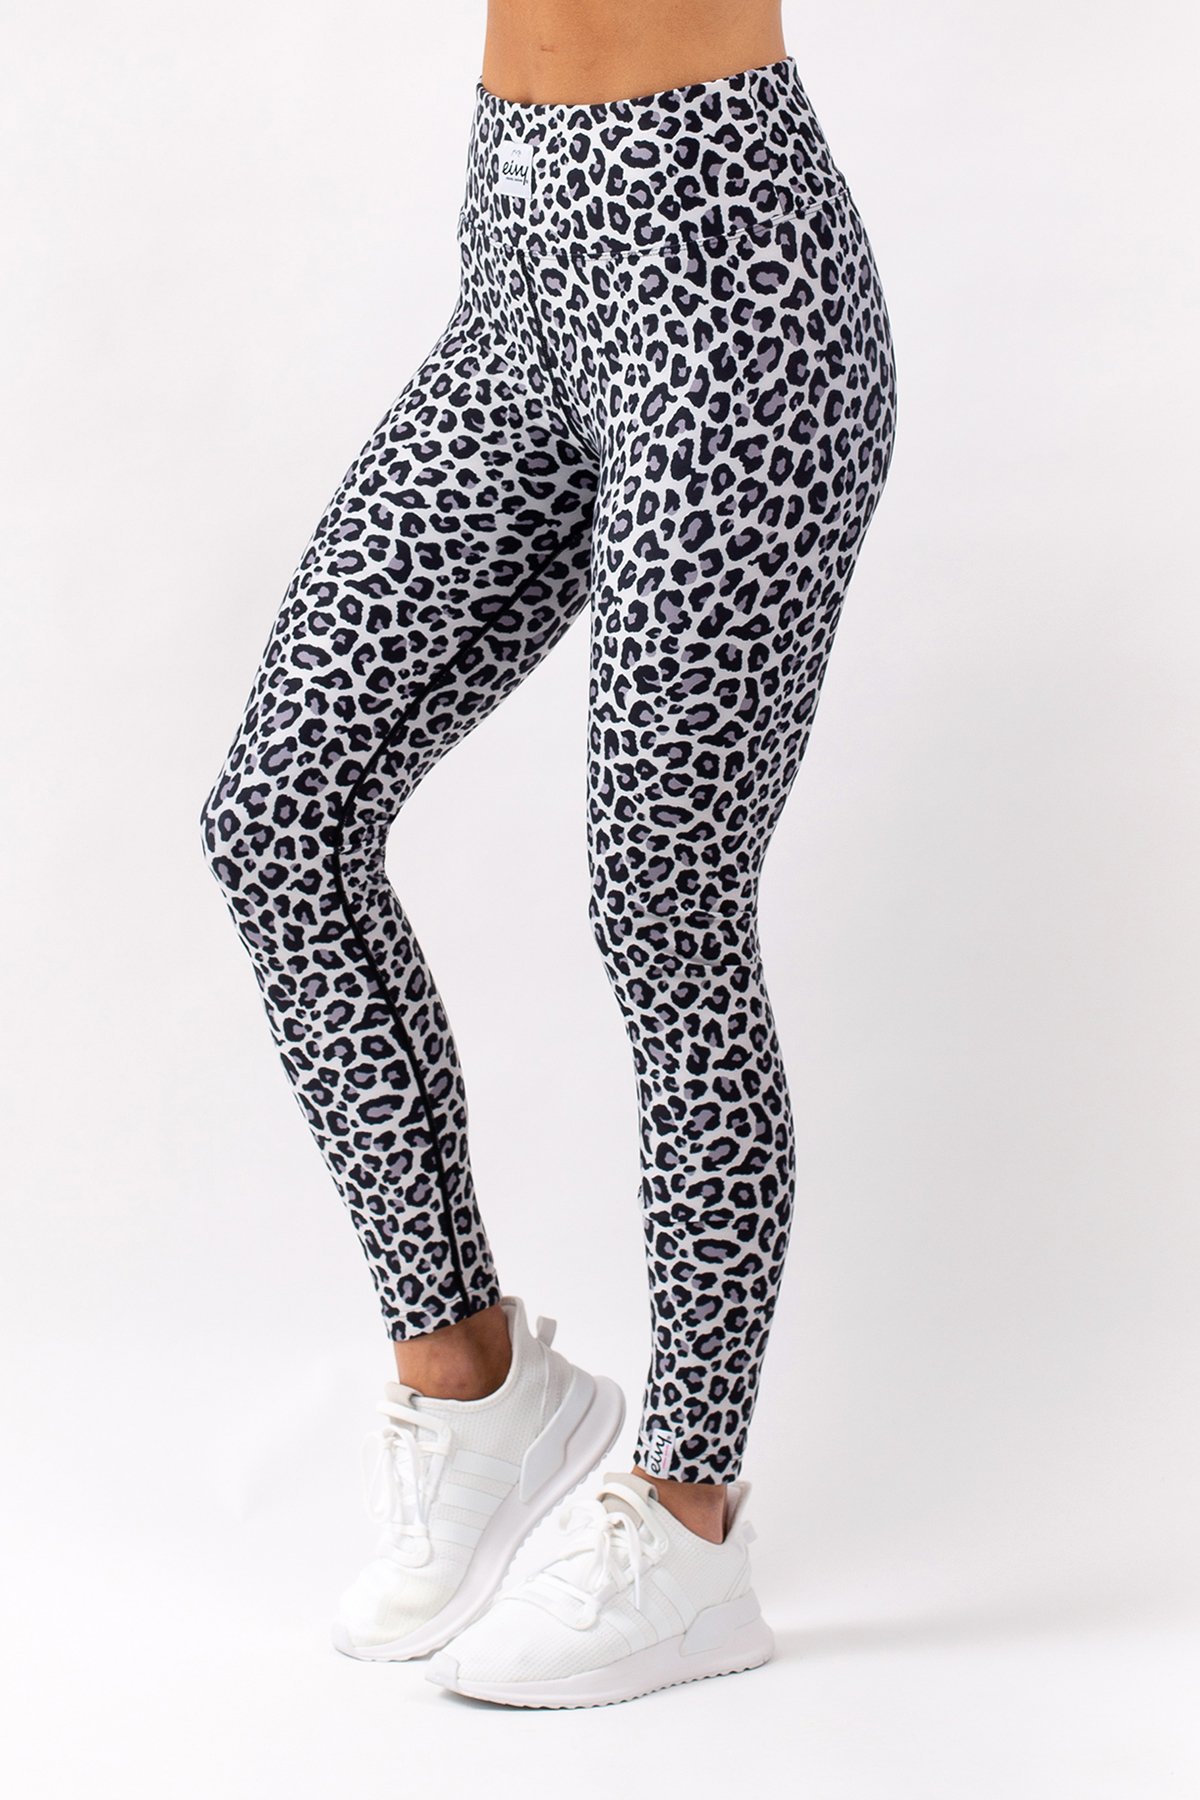 Snow Leopard Cheetah Print Leggings Black and White Animal Print Capri LEGGINGS  WOMENS Capri Leggings Yoga Pants Women's Yoga Capri Leggings